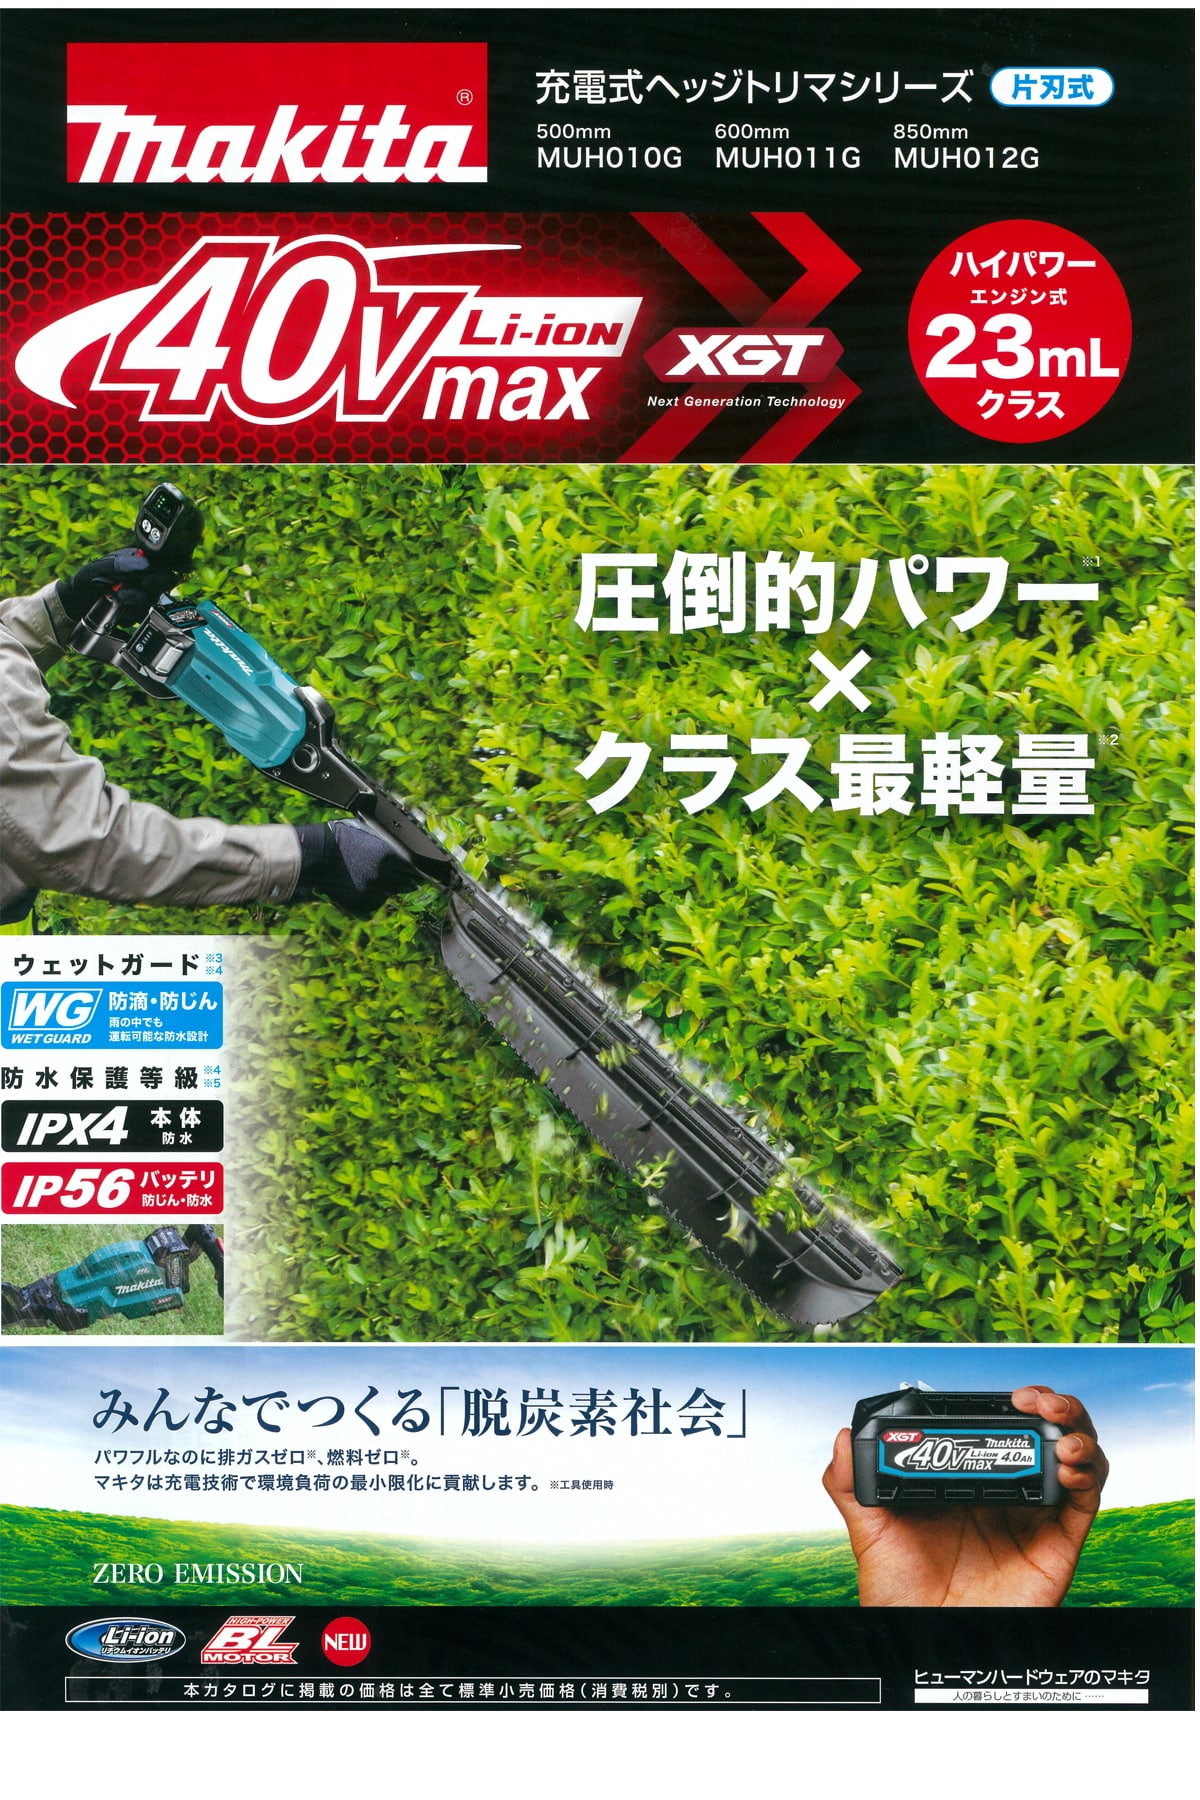 マキタ MUH012GRDX 40Vmax充電式ヘッジトリマ 850mm ウエダ金物【公式